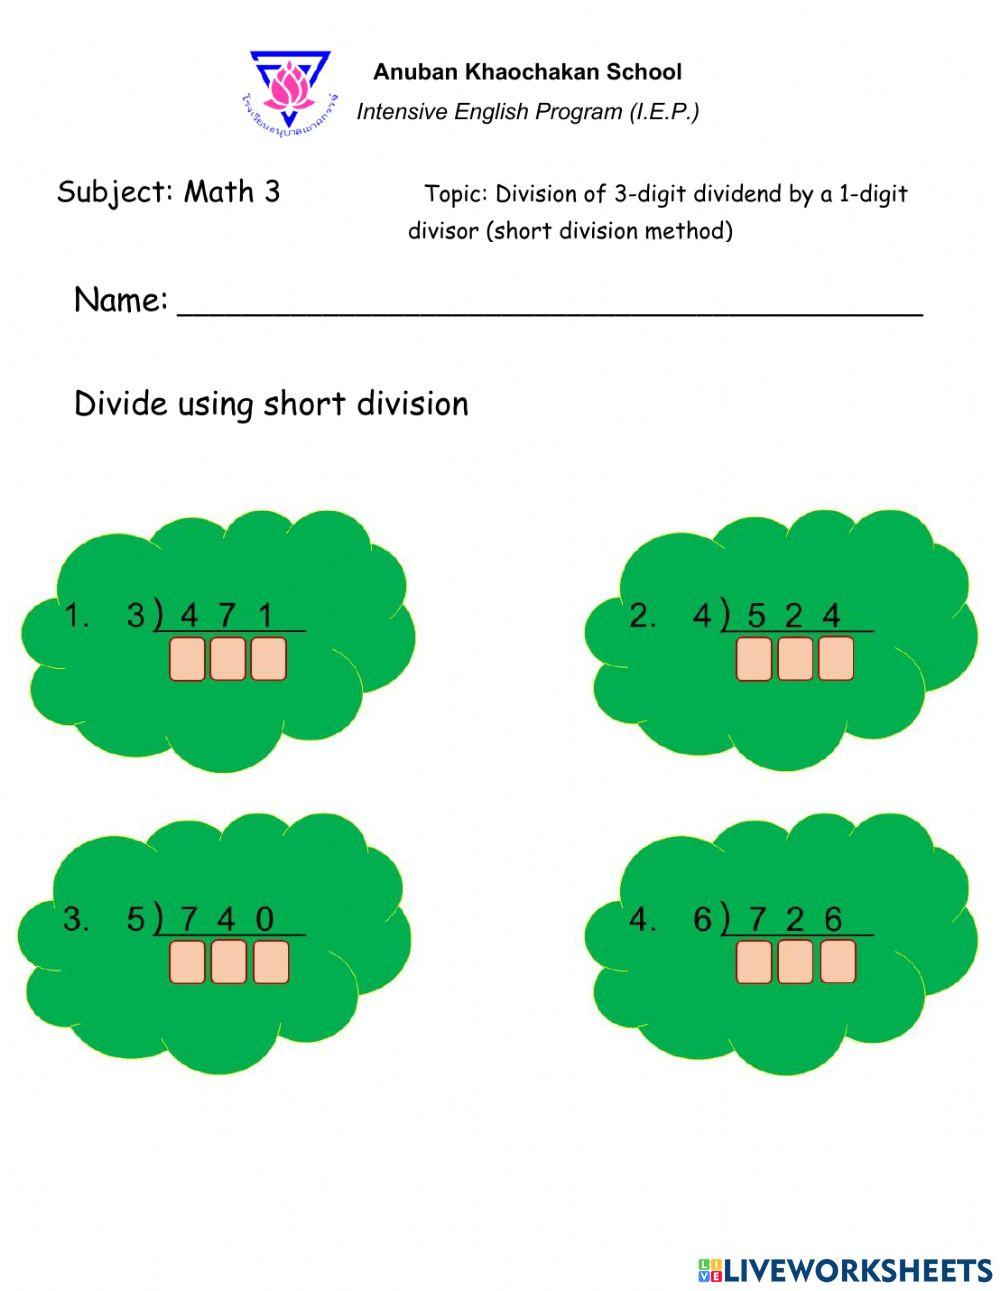 Division of 3-digit dividend by 1-digit divisor (Short method)